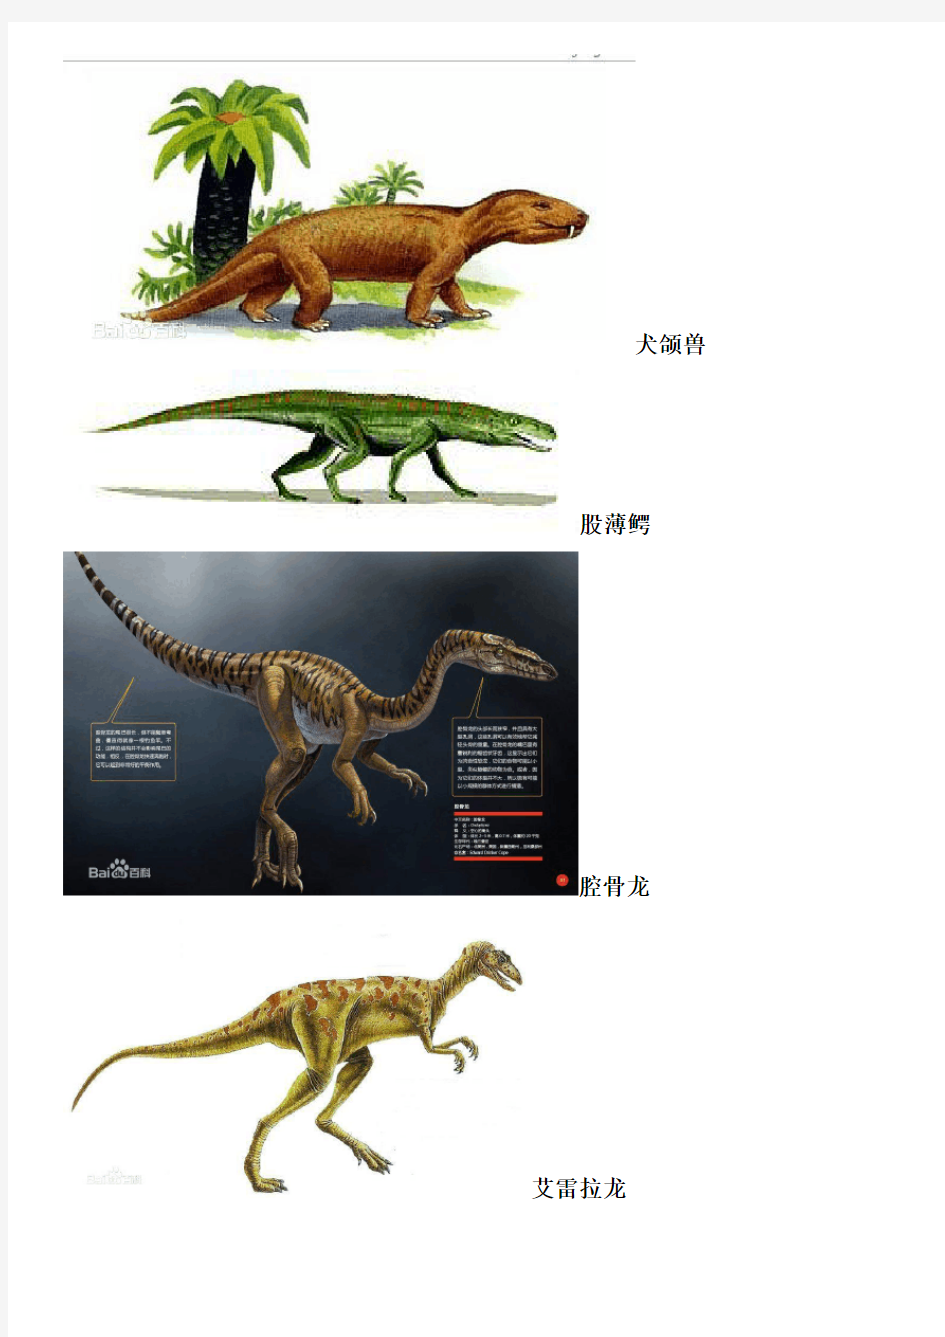 恐龙名字以及图片